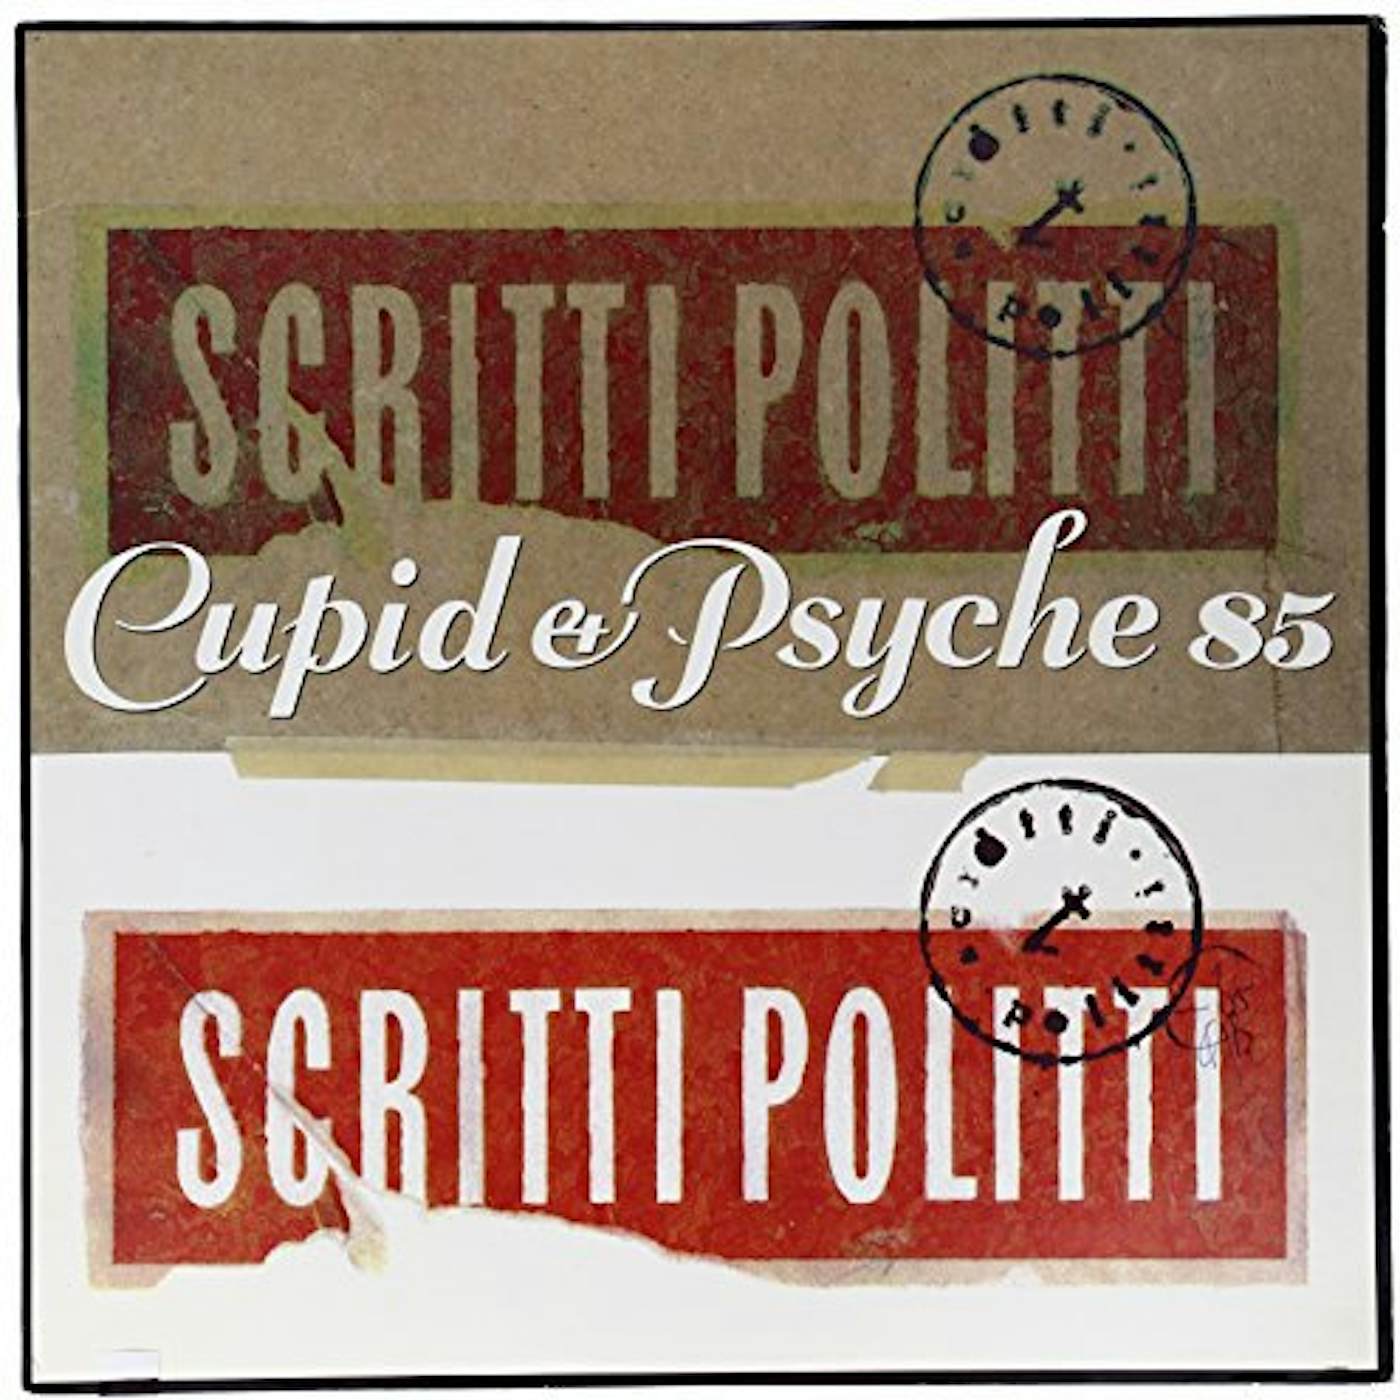 Scritti Politti CUPID & PSYCHE 85 Vinyl Record